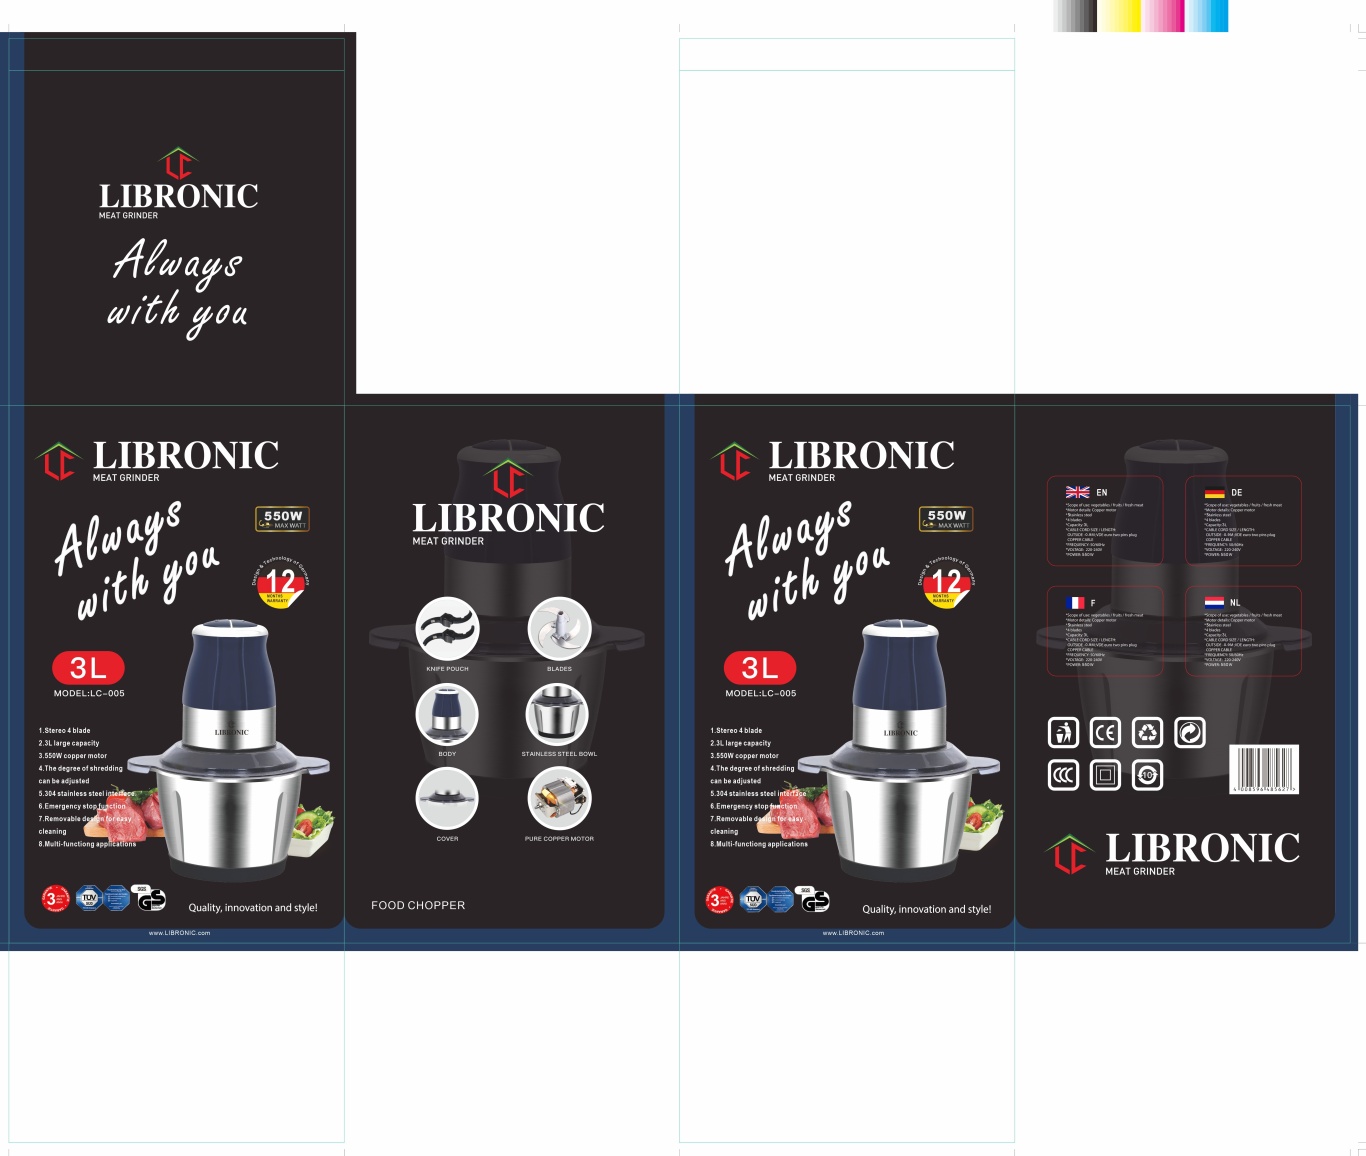 LIBRONIC品牌的绞肉机料理器黑色包装图3